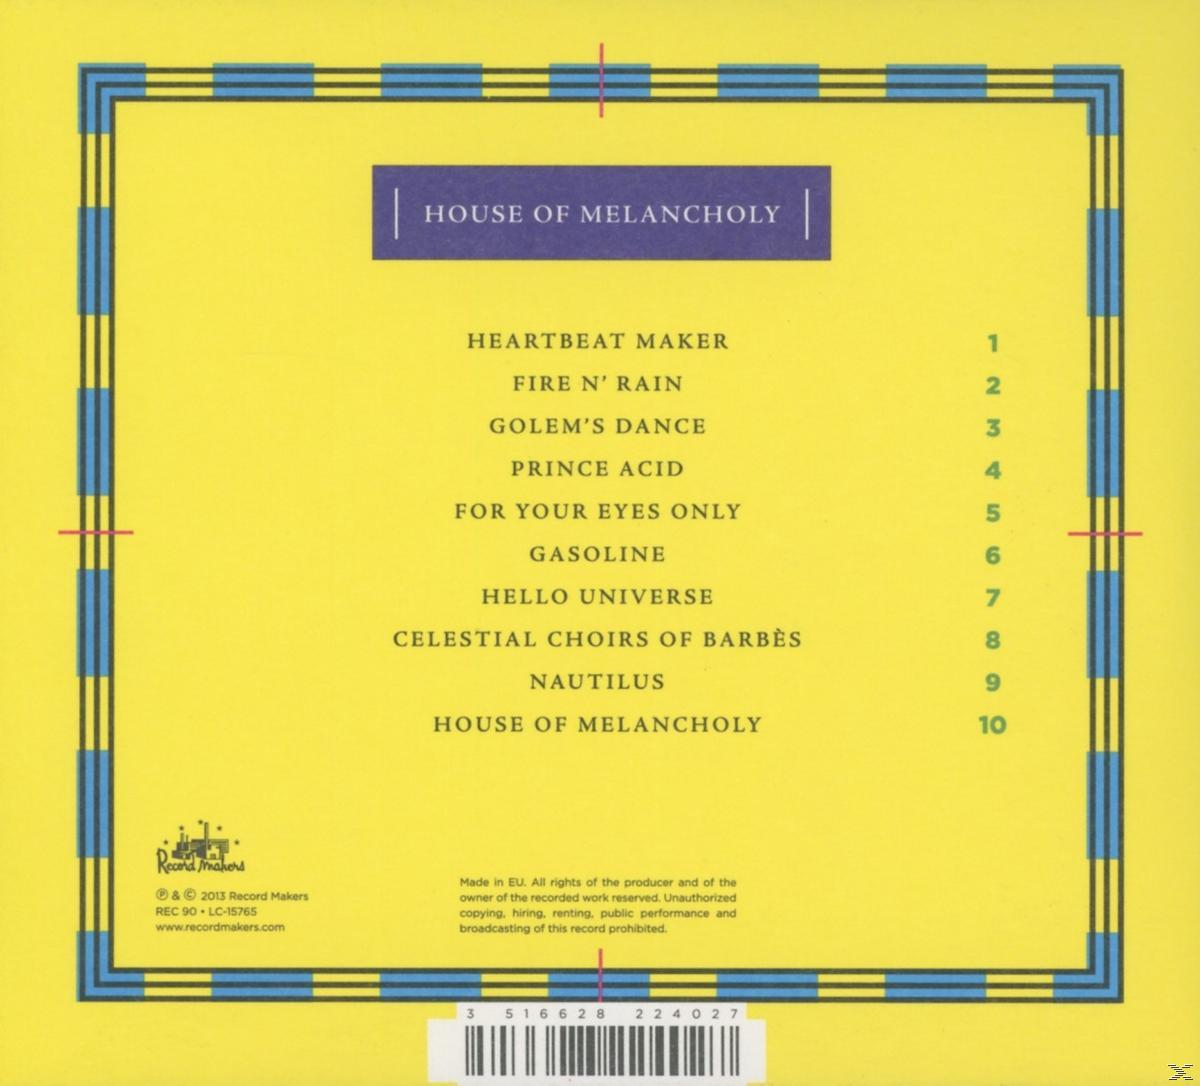 House Of - Washed - Melancholy Acid (CD)